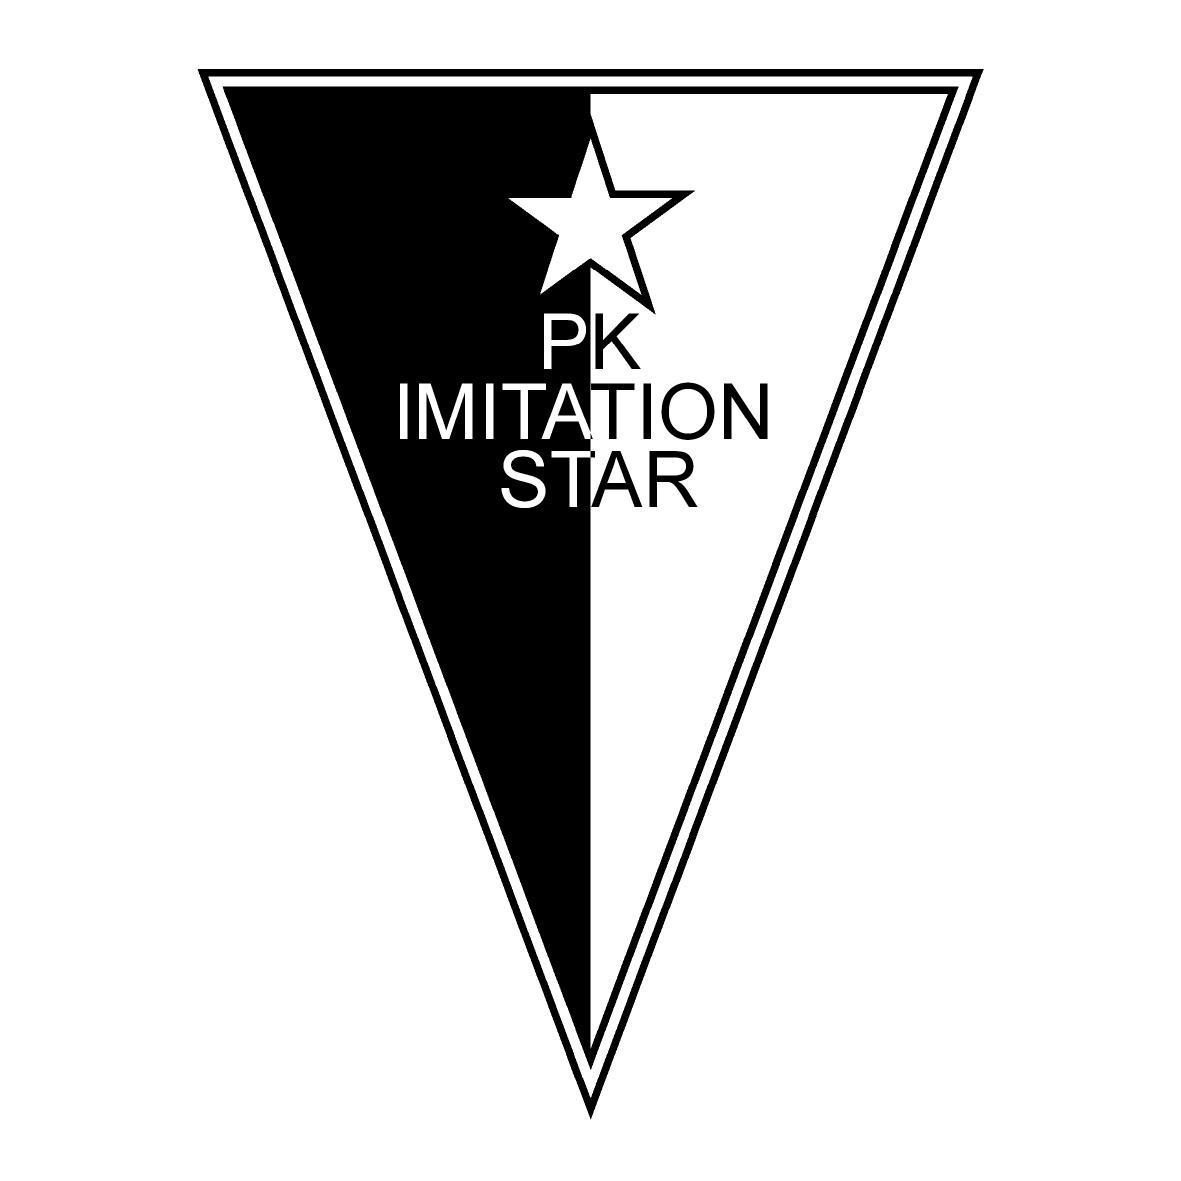 PK IMITATION STAR